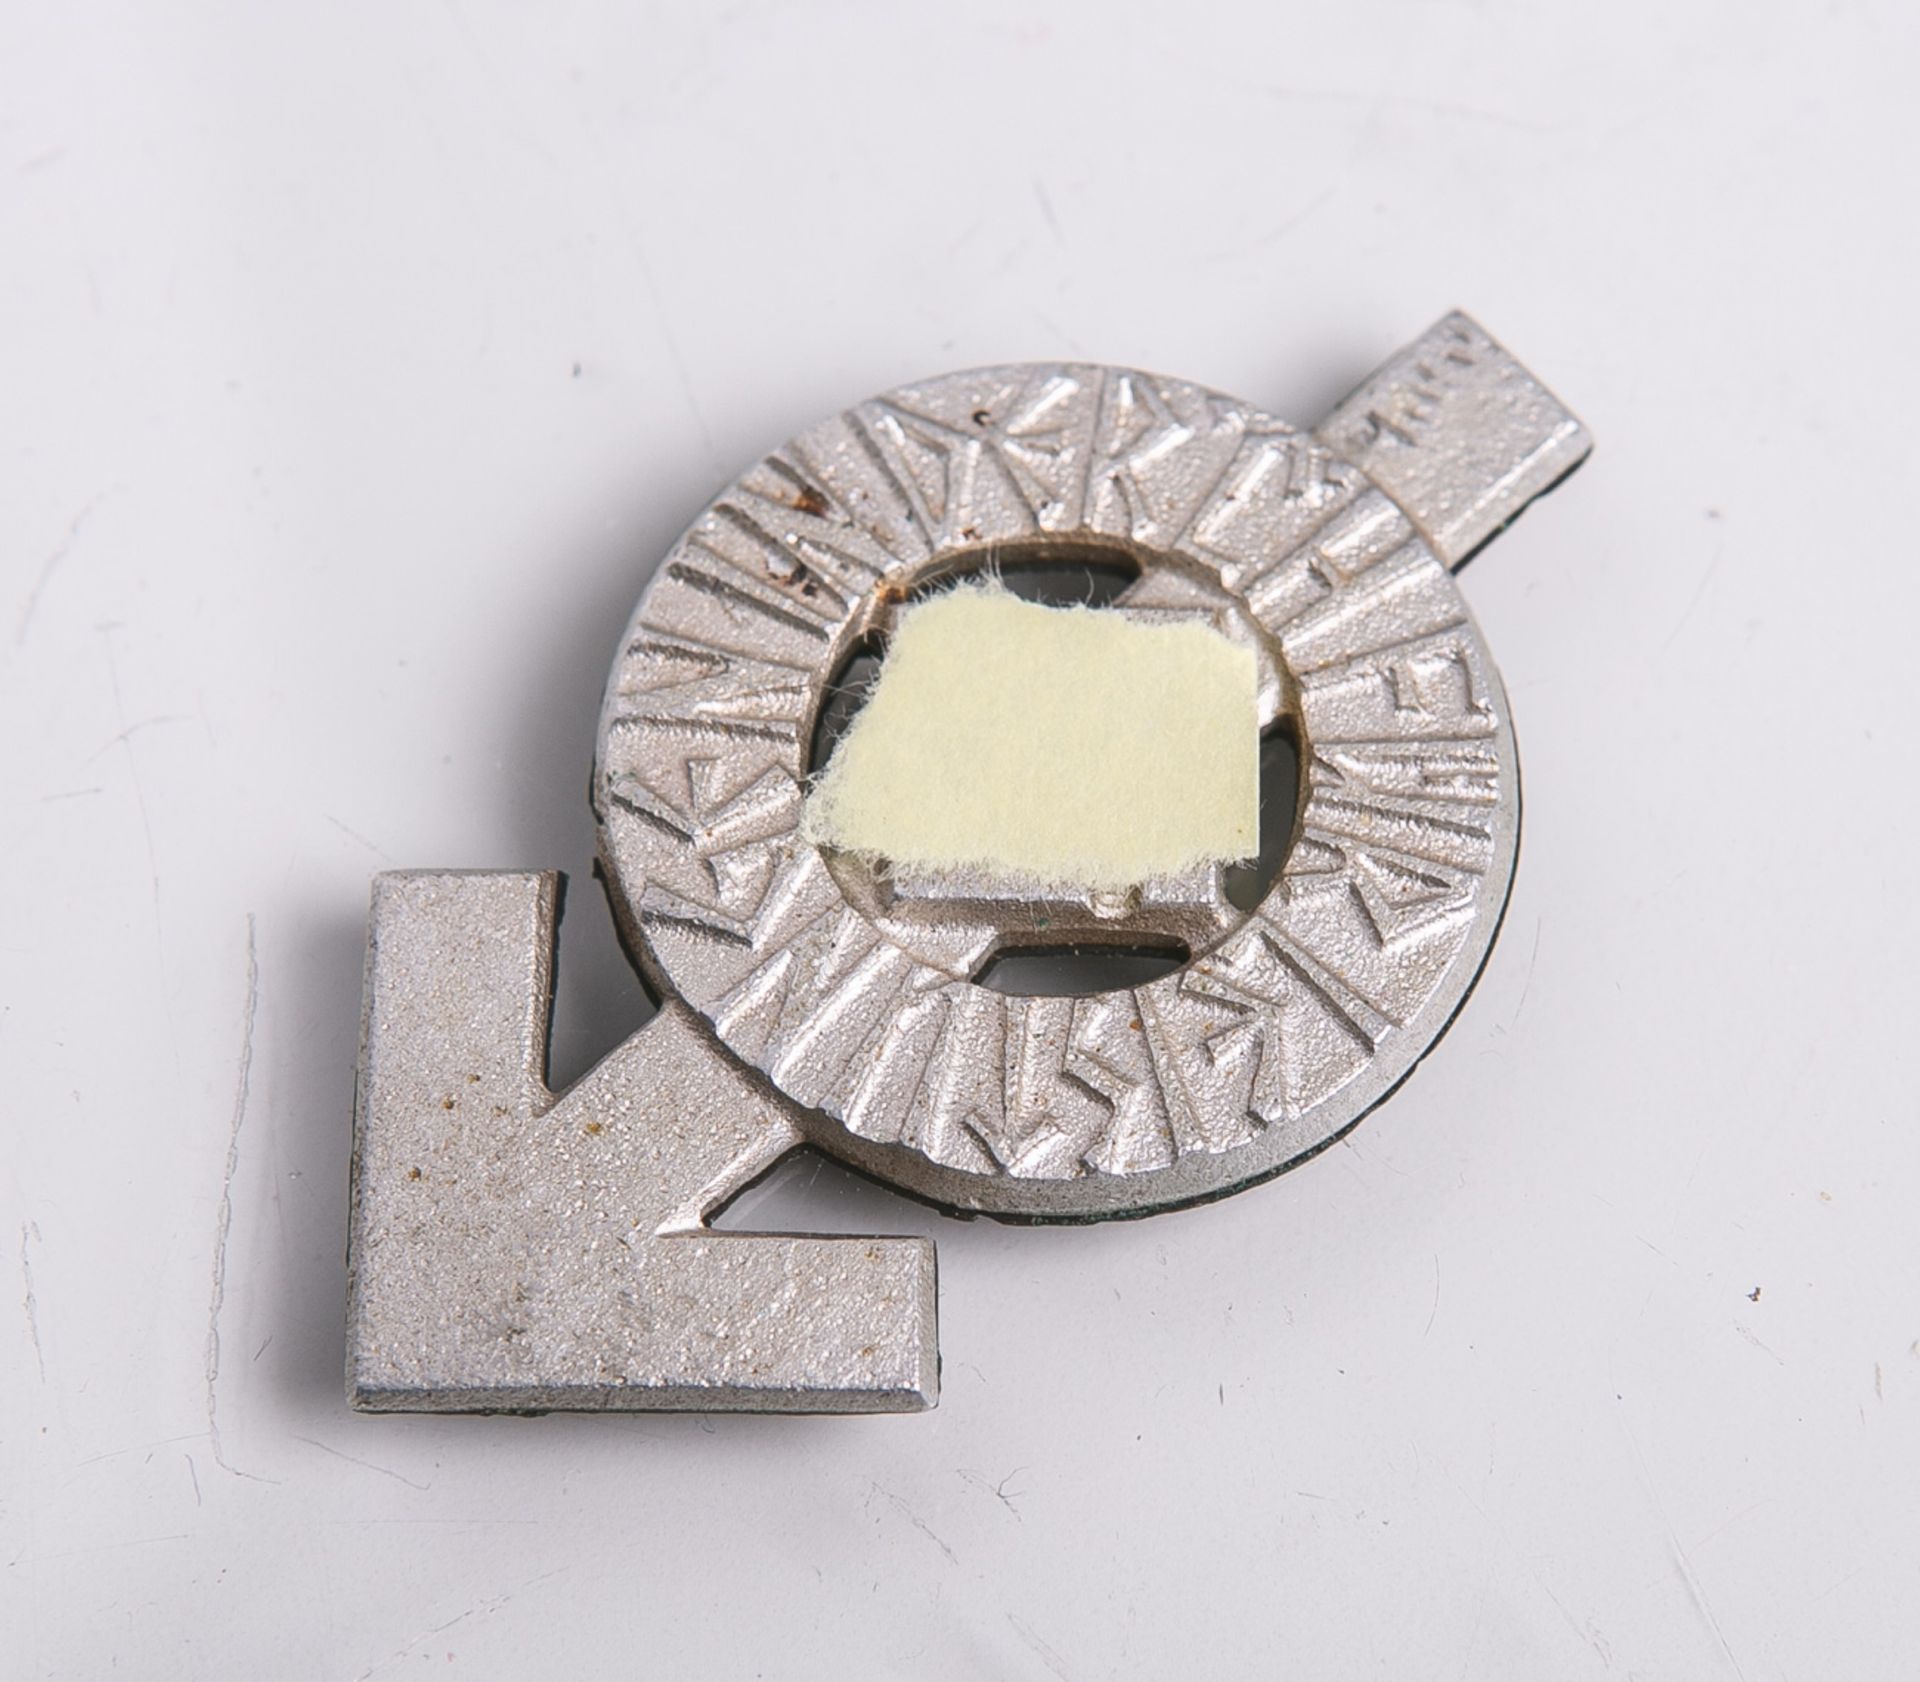 Leistungsabzeichen der HJ, Alu-Silber, Nr. 230652-M1/101. Nadel fehlt, minimale